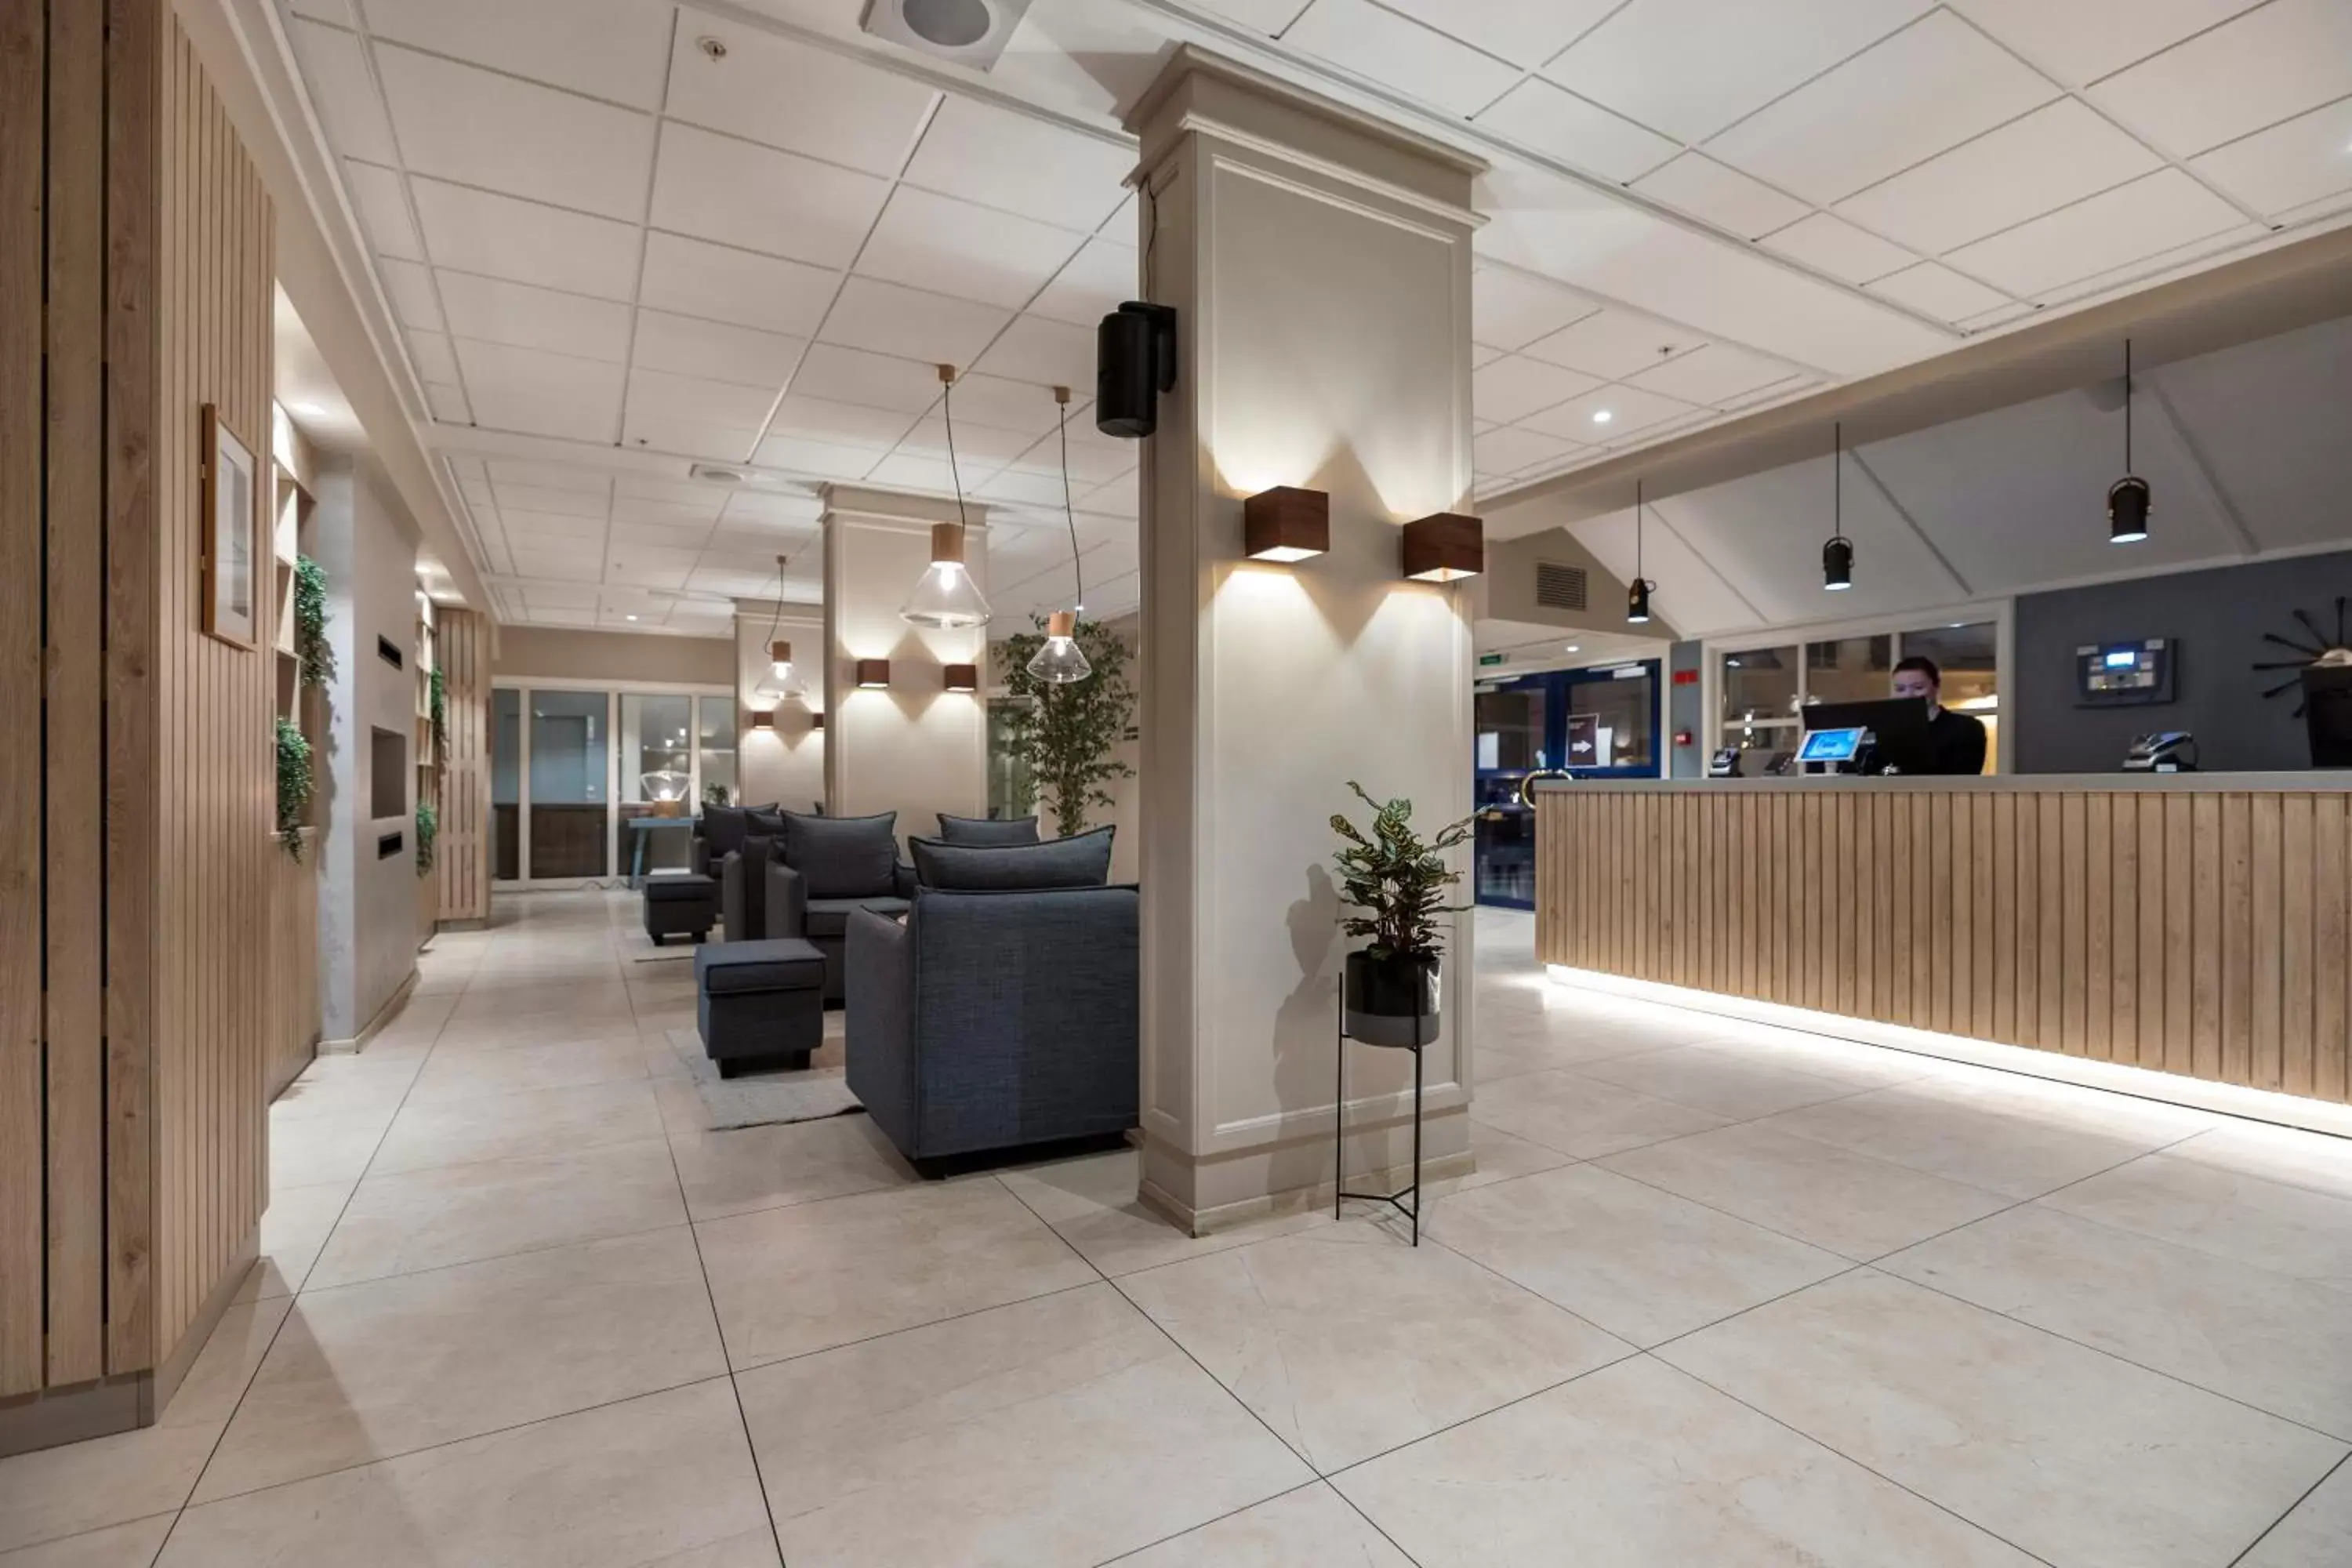 Lobby or reception, Lobby/Reception in Clarion Hotel Tyholmen